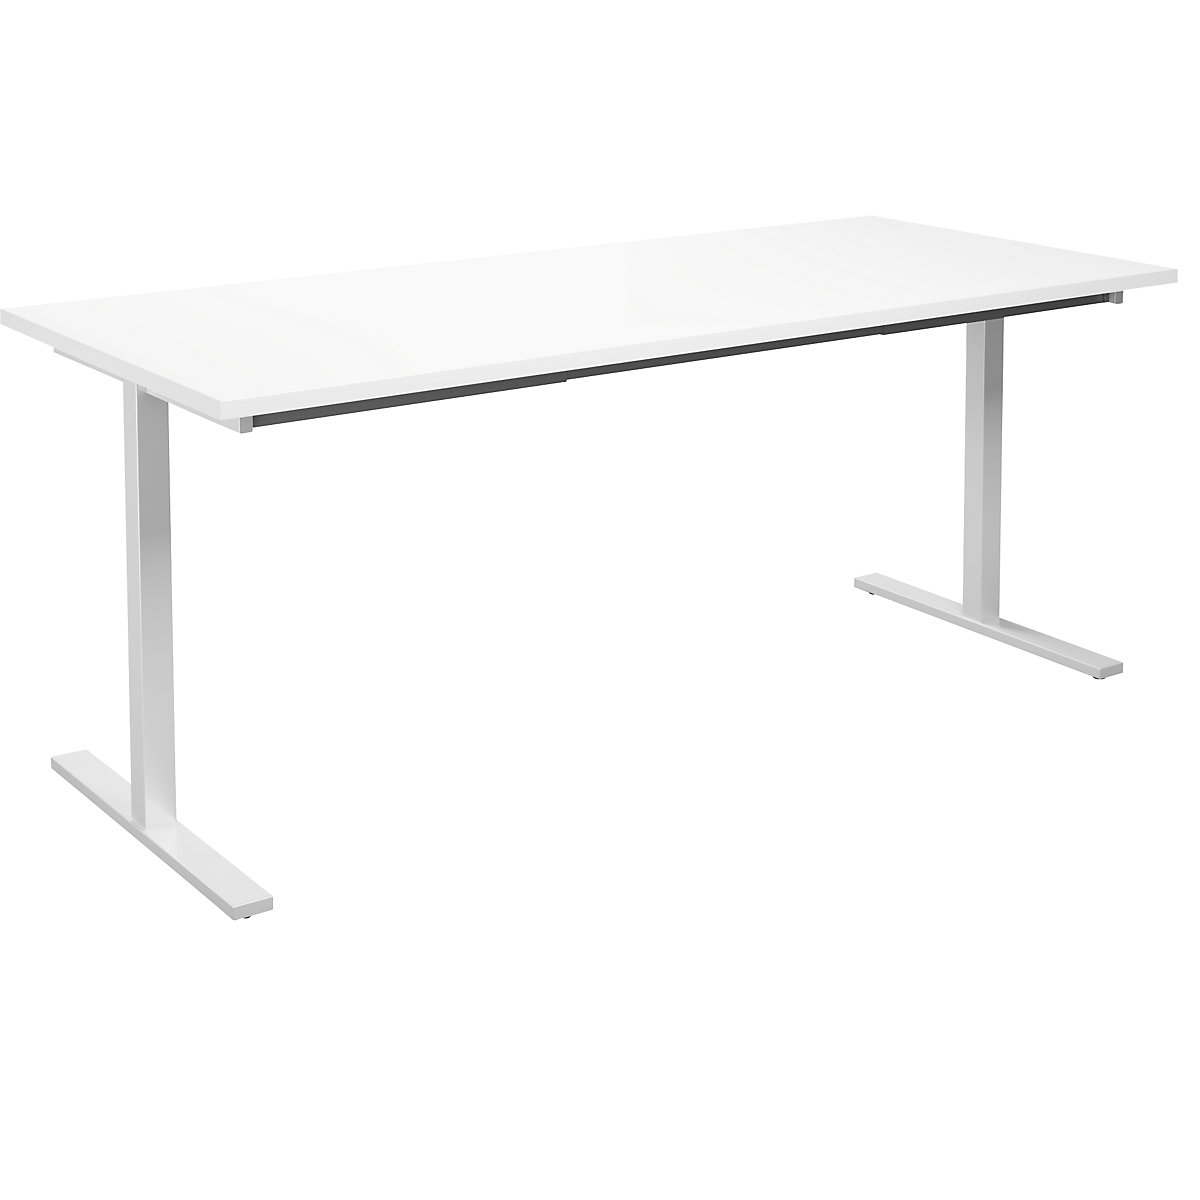 DUO-T multi-purpose desk, straight tabletop, WxD 1800 x 800 mm, white, white-3